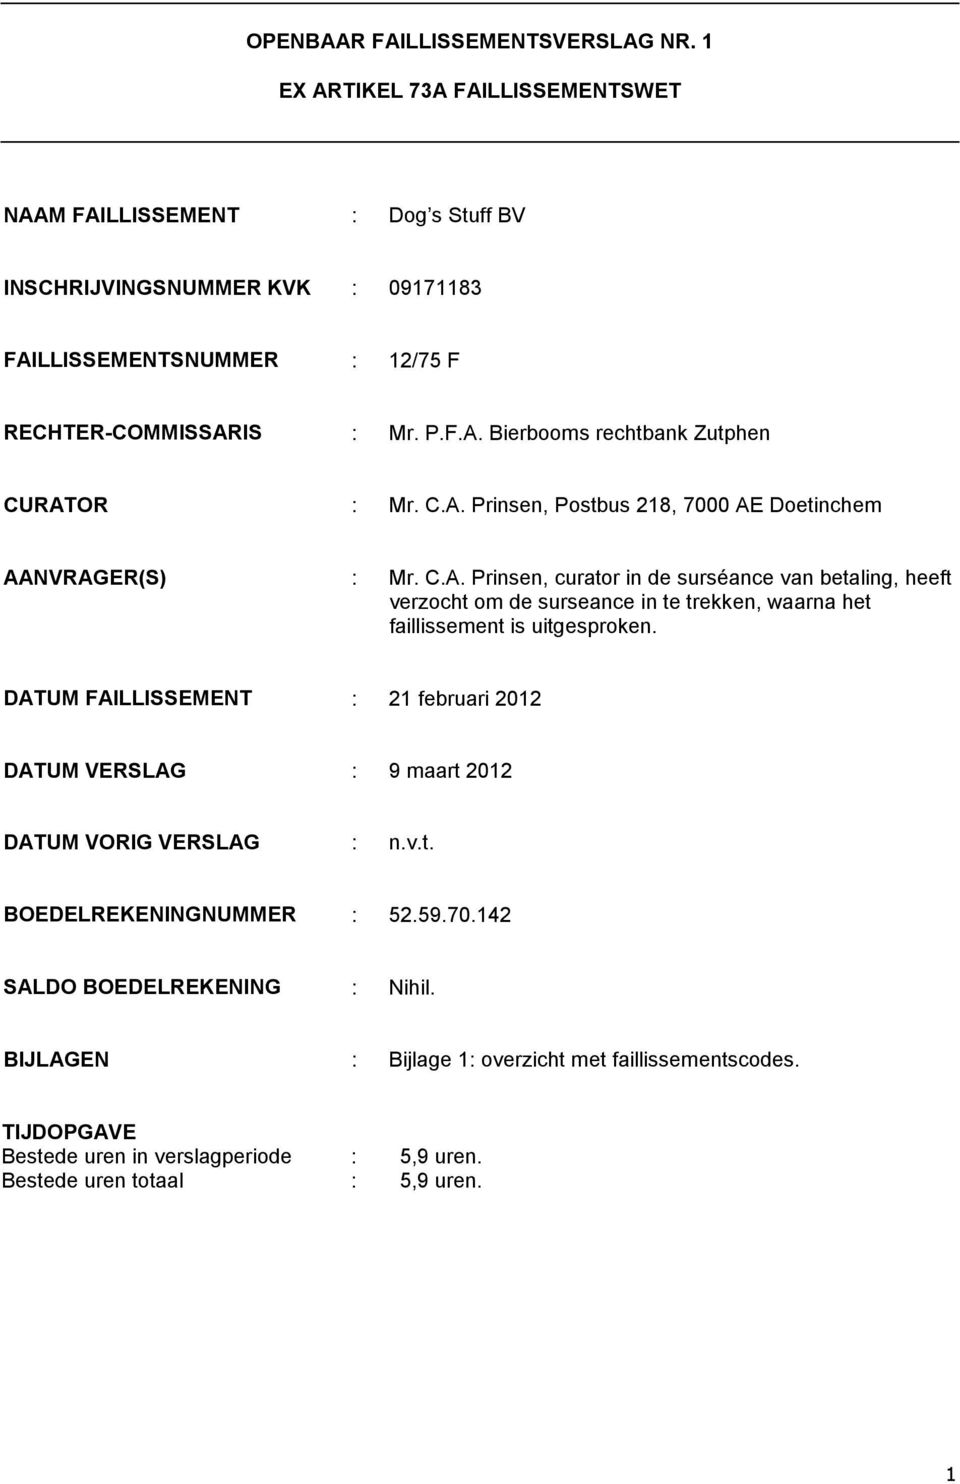 C.A. Prinsen, Postbus 218, 7000 AE Doetinchem AANVRAGER(S) : Mr. C.A. Prinsen, curator in de surséance van betaling, heeft verzocht om de surseance in te trekken, waarna het faillissement is uitgesproken.